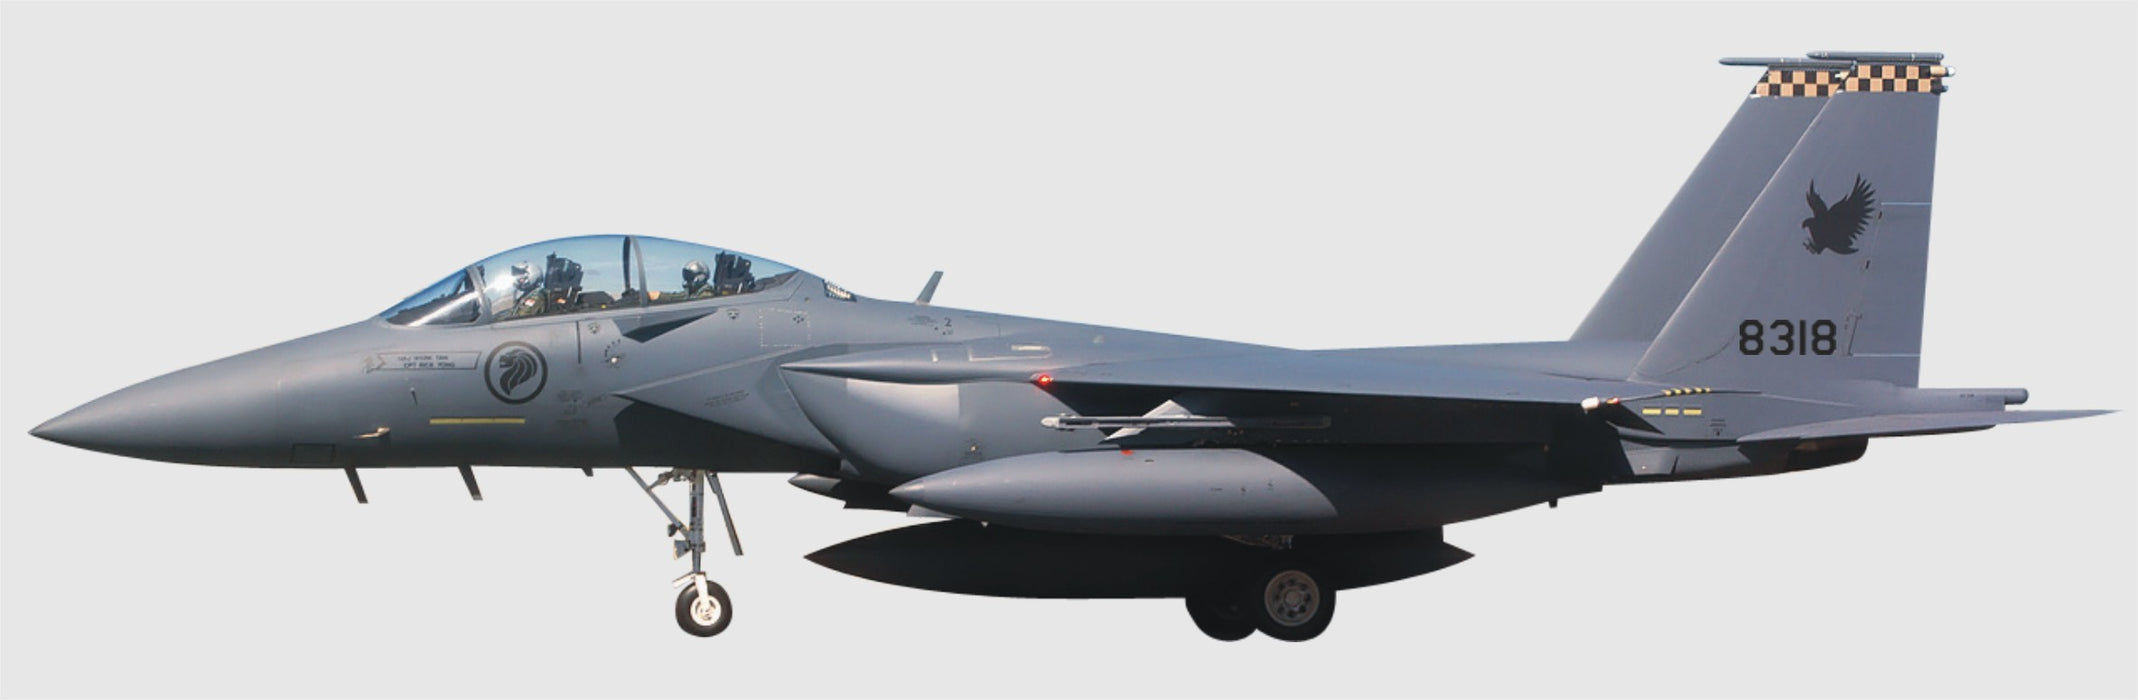 1/72 F15E STRIKE EAGLE RSAF NO. 8318